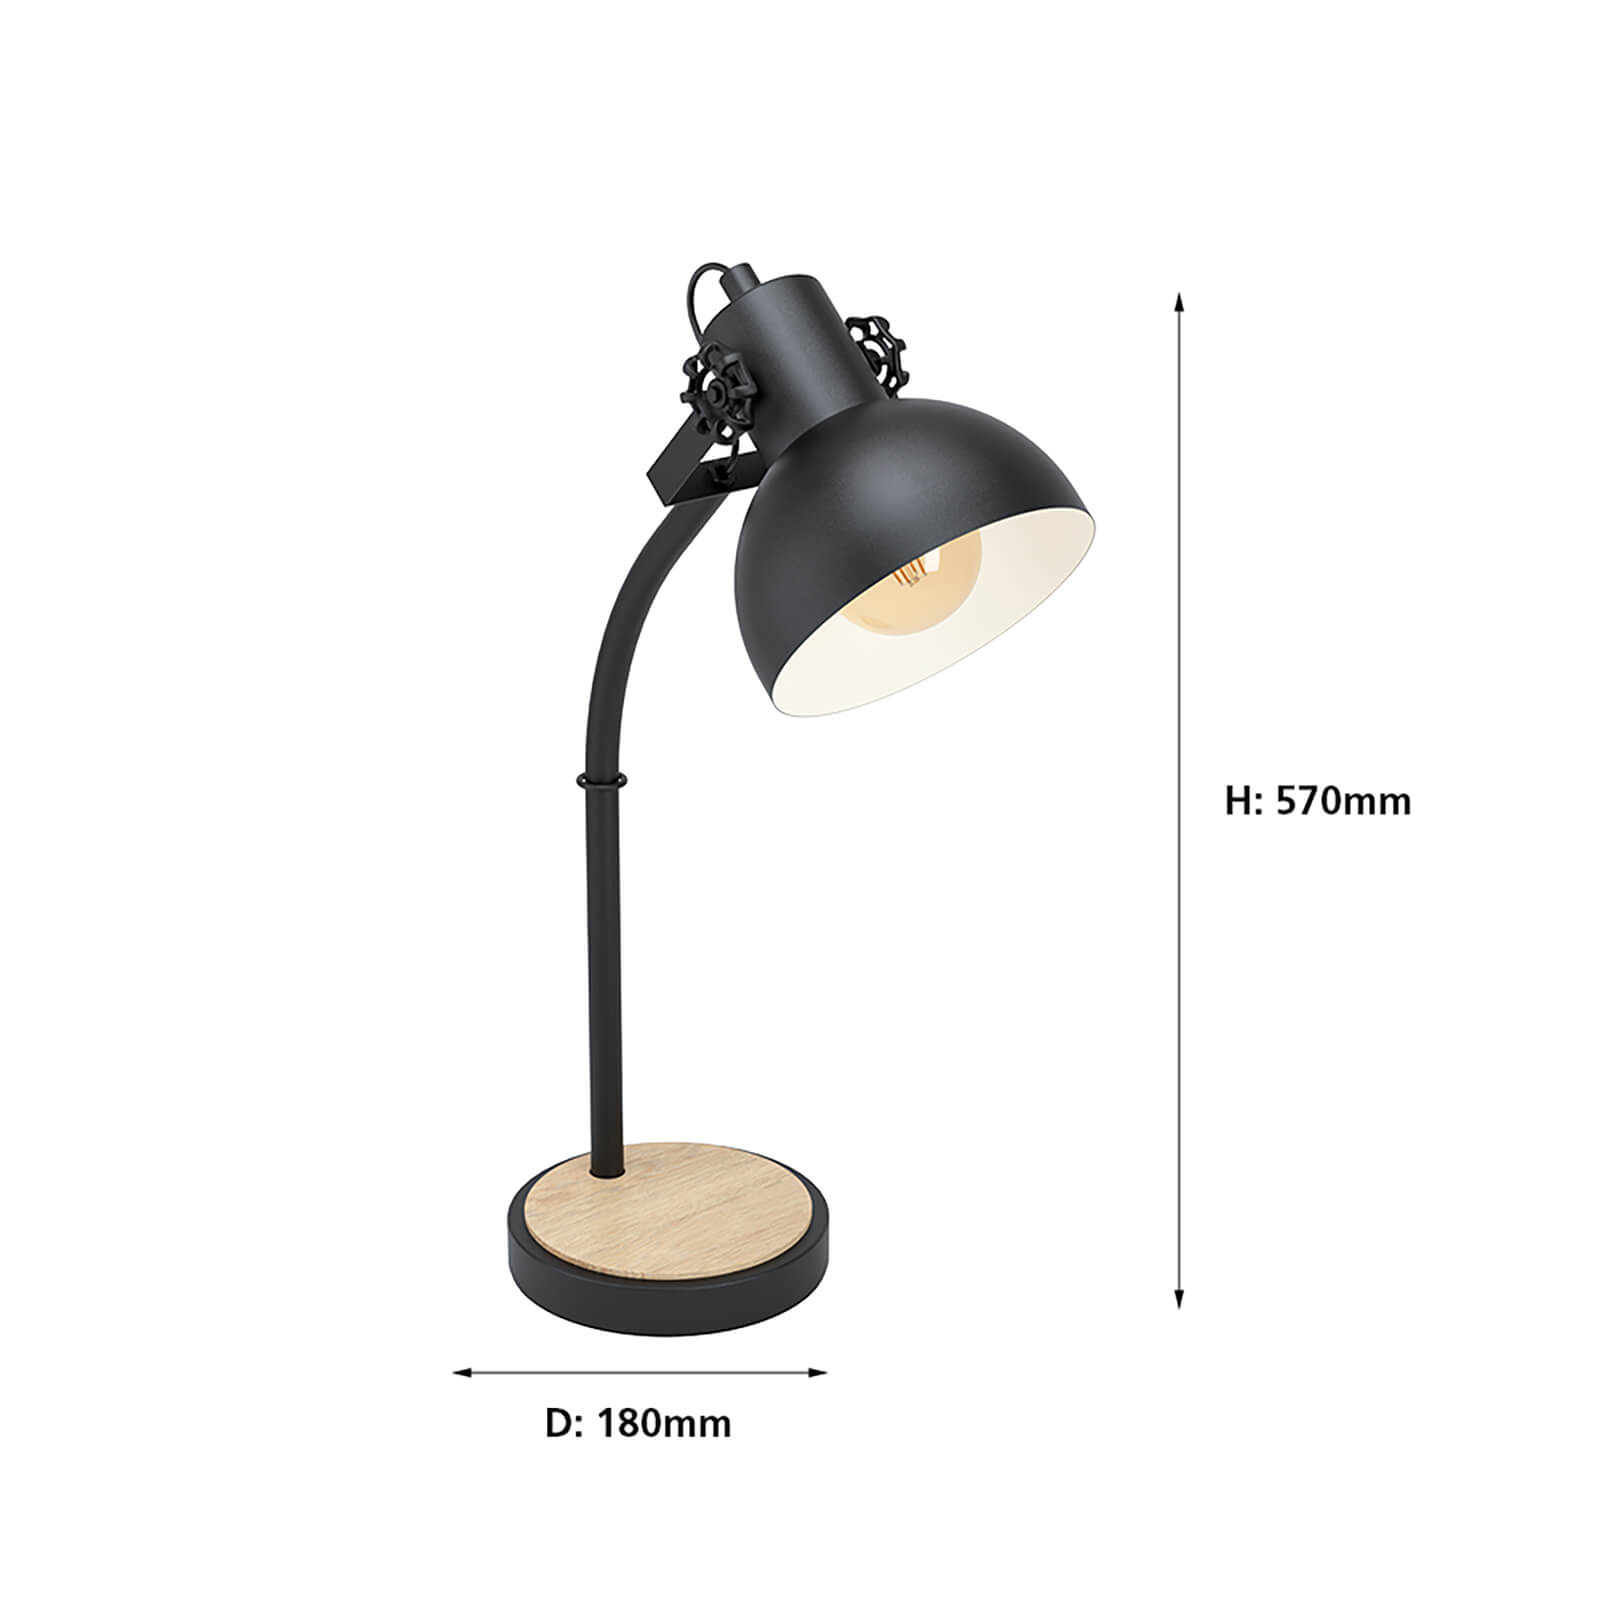 EGLO Lubenham Stylish Black and Wood Table Lamp